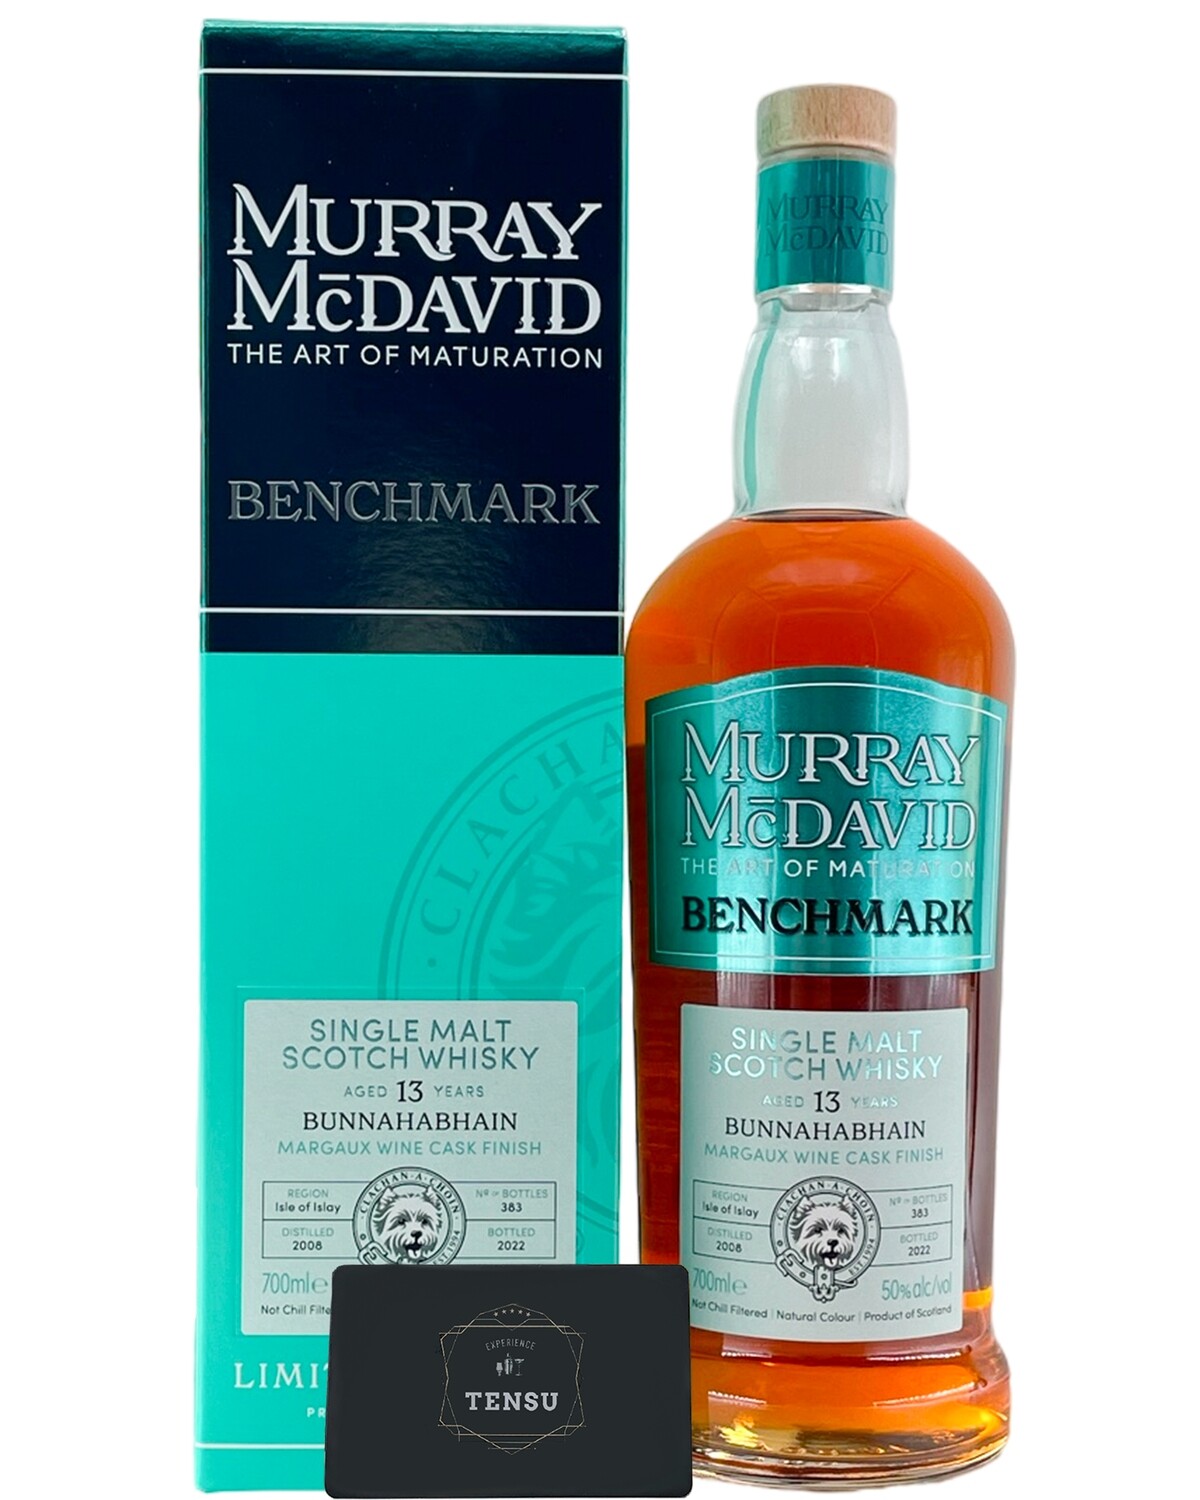 Bunnahabhain 13Y Margaux Wine Cask (2008-2022) 50.0 Limited Release - Benchmark "Murray McDavid"